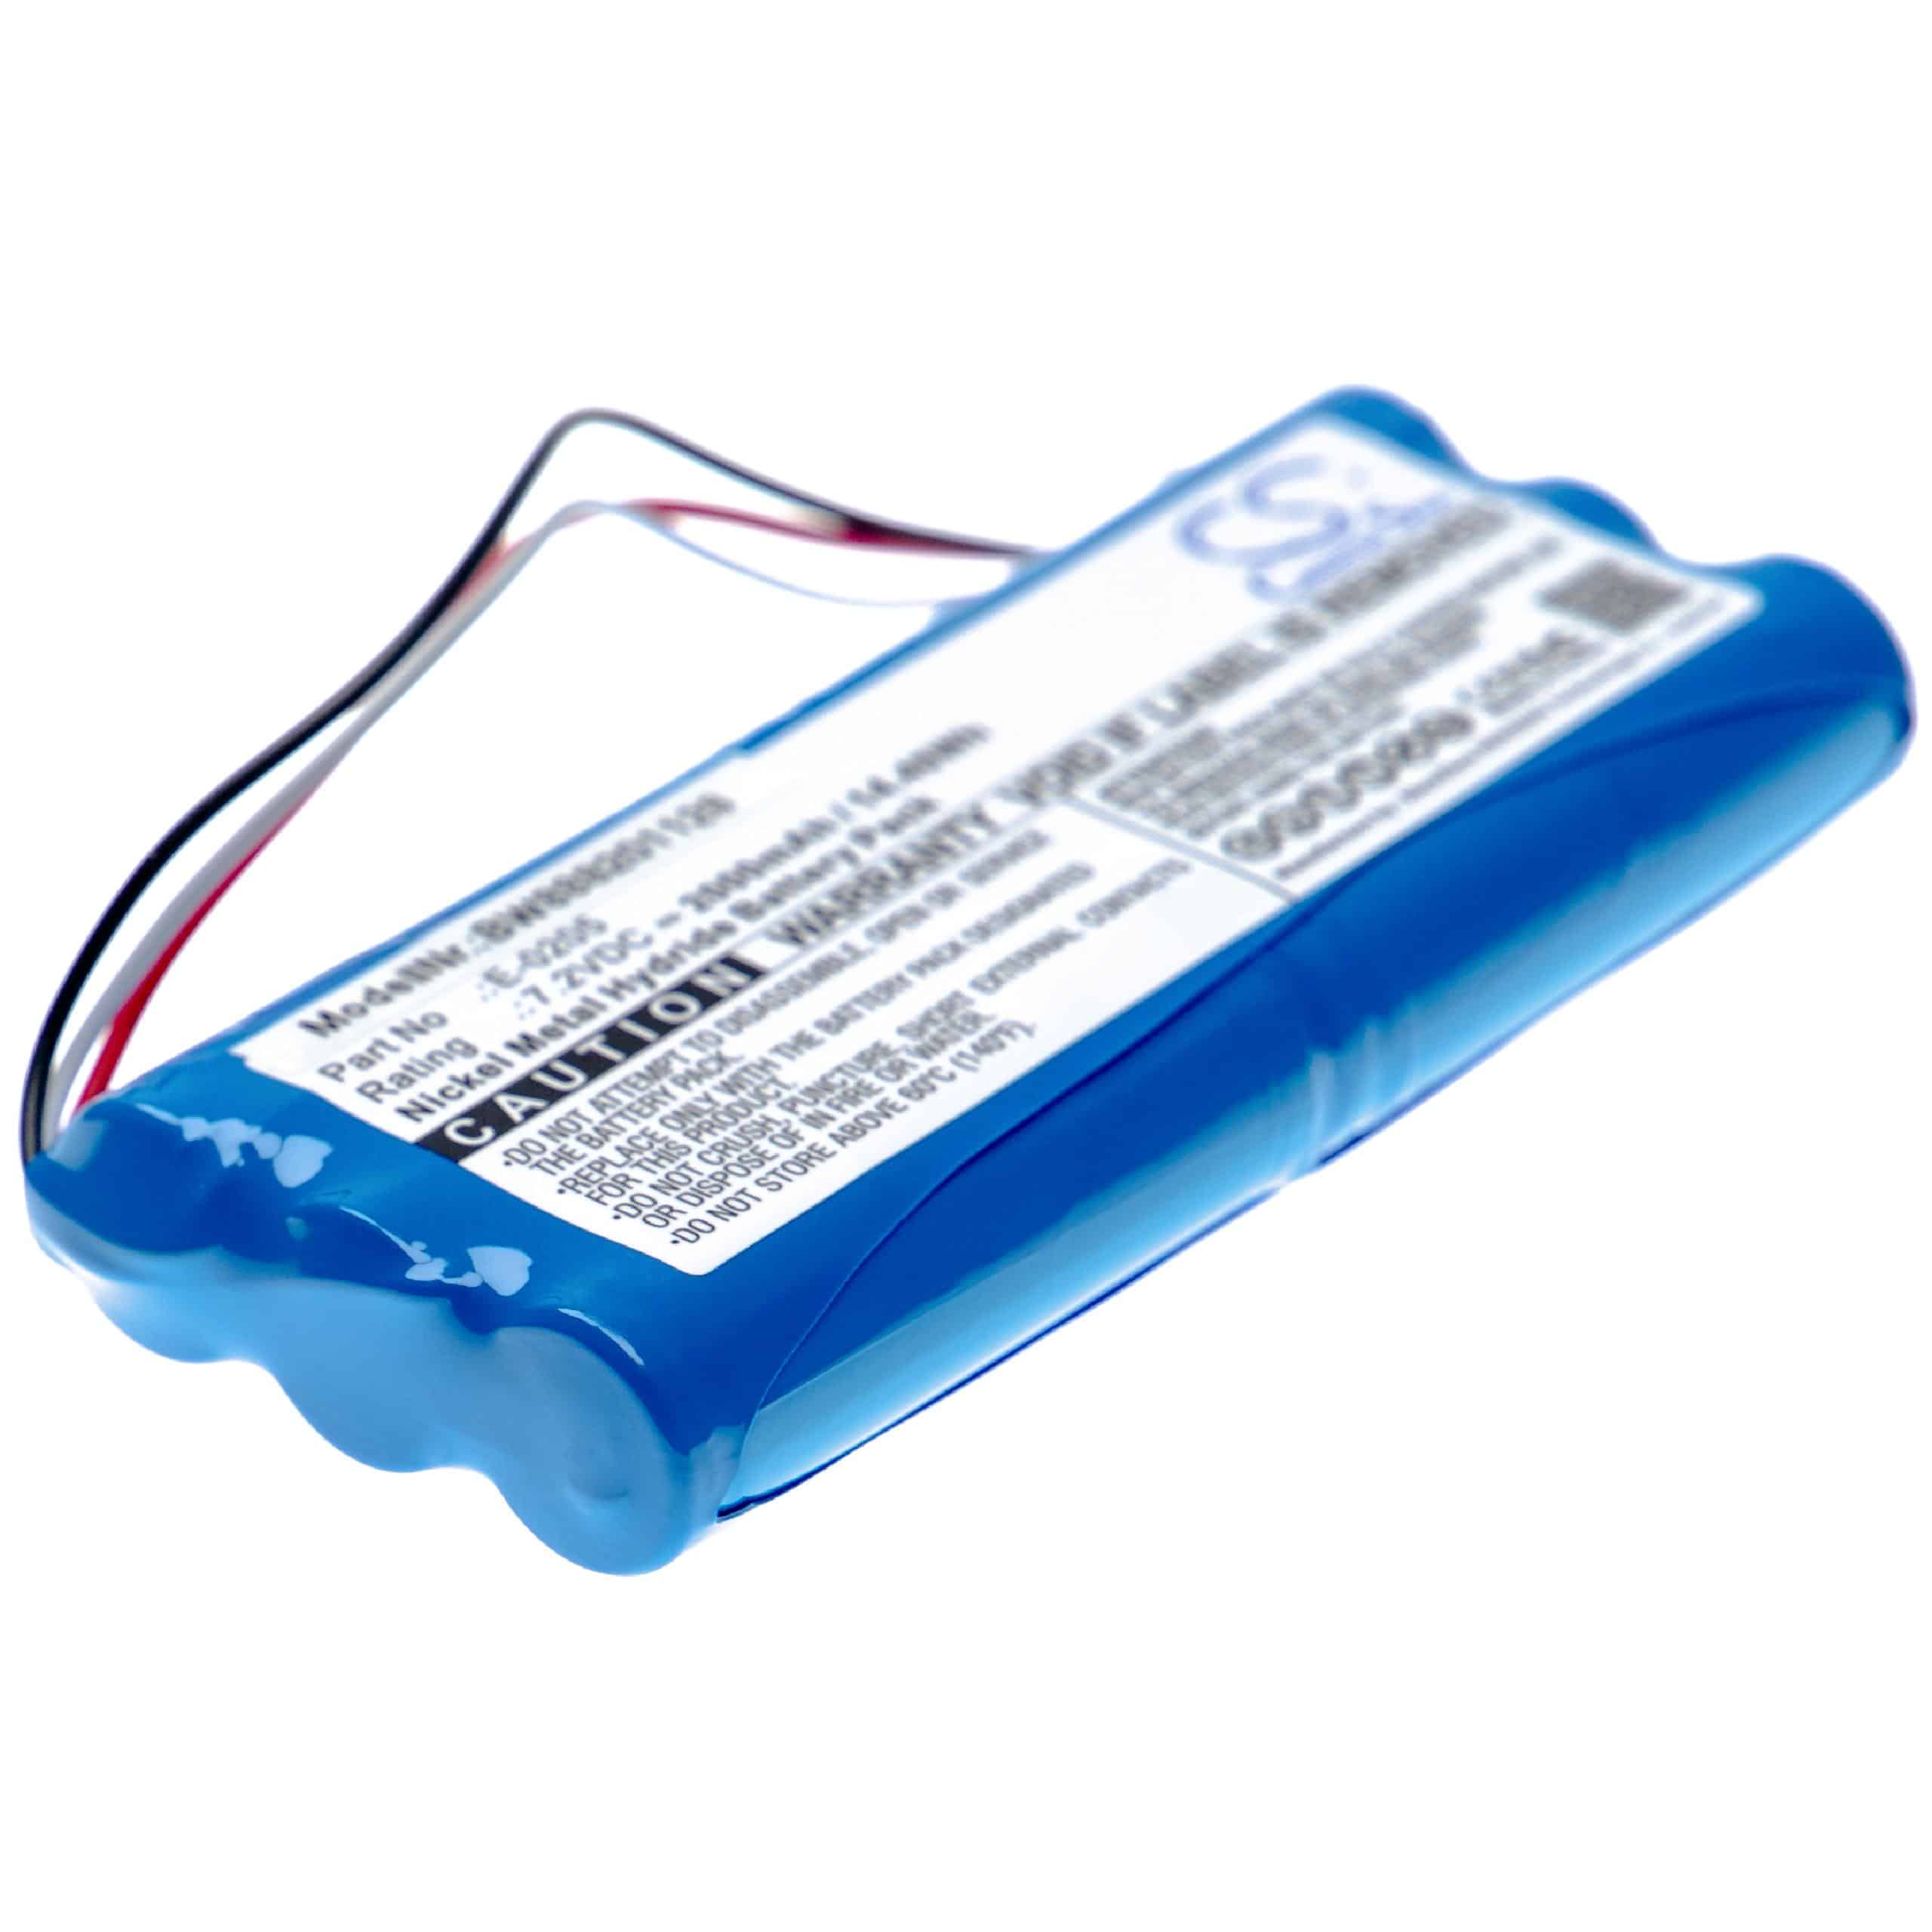 Batteria per dispositivo di misurazione sostituisce Aaronia E-0205, ACE604396 2S1P Aaronia - 2000mAh 7,2V NiMH